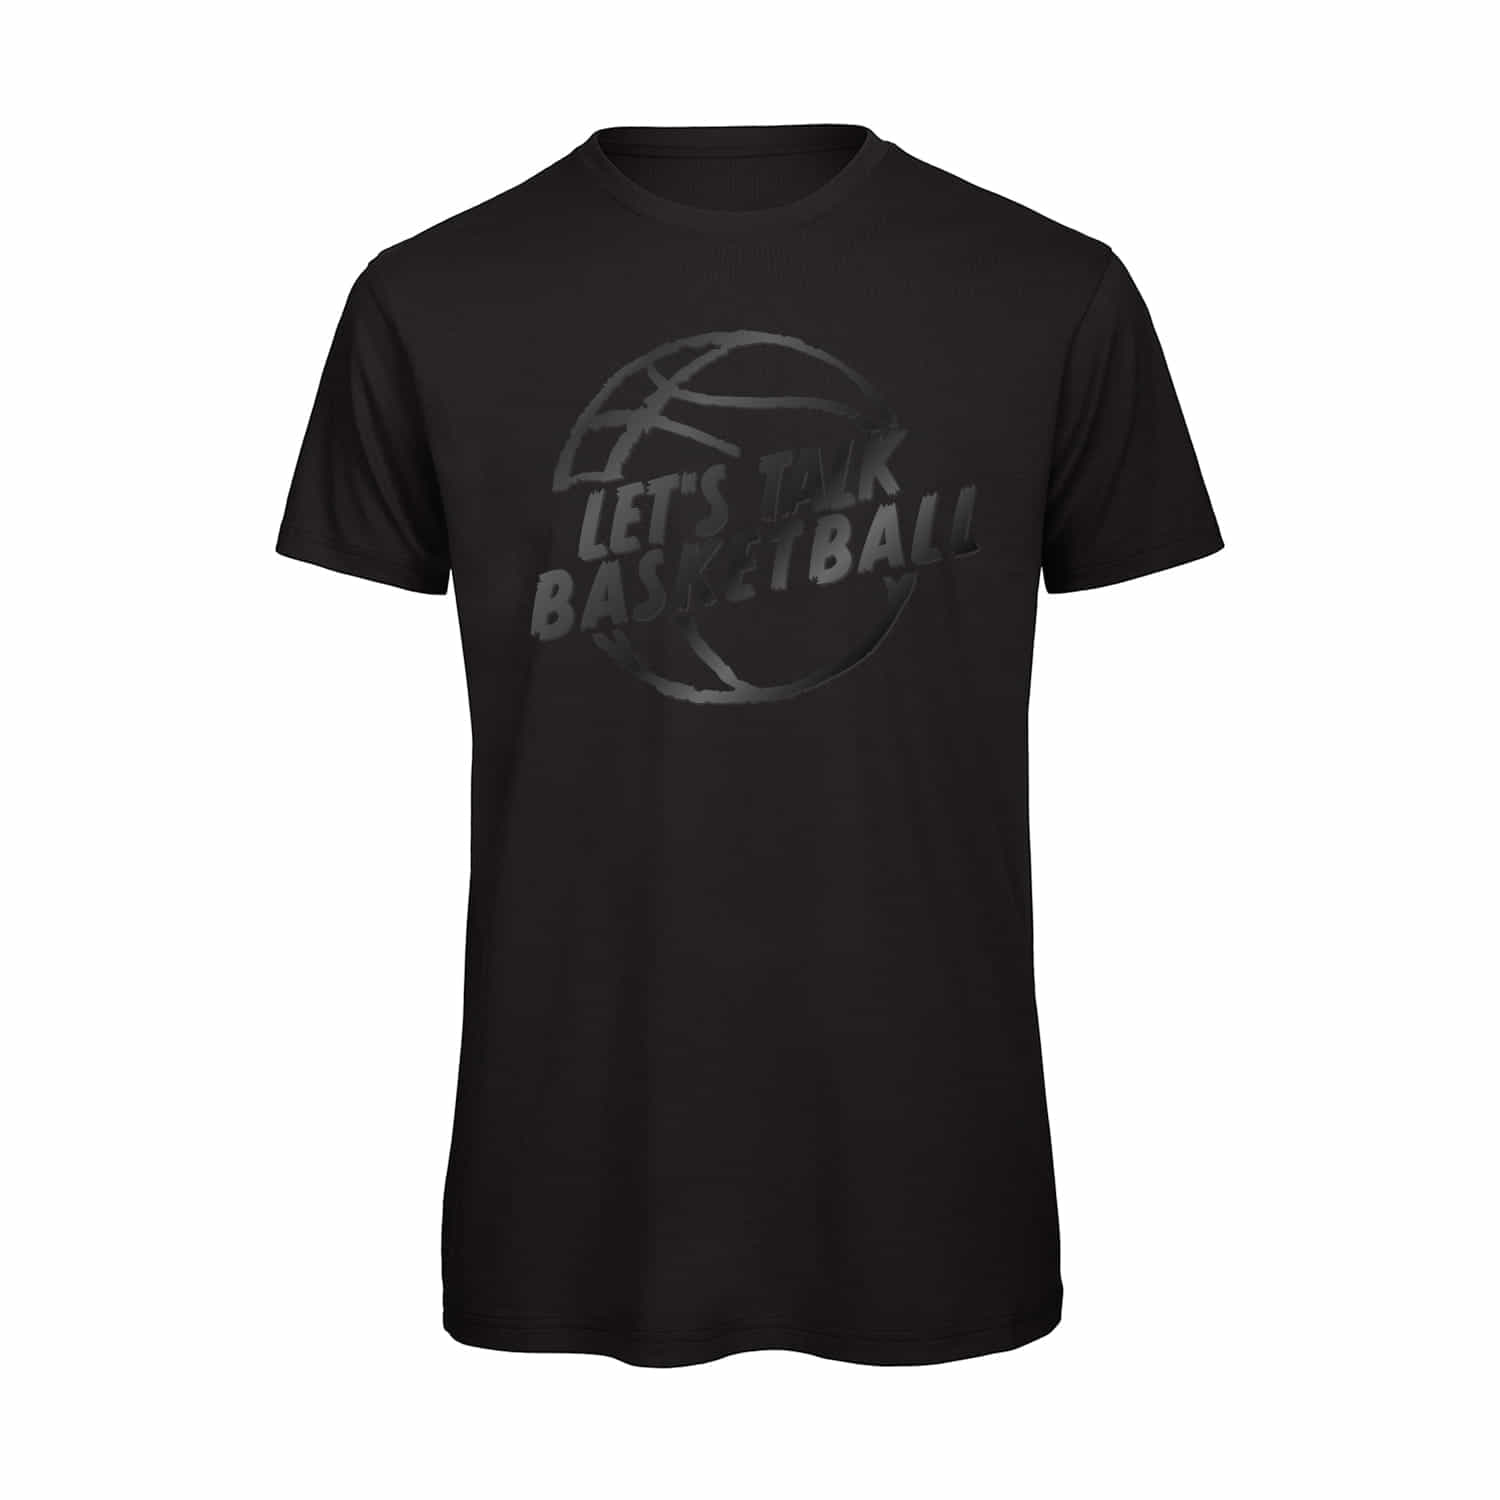 Herren T-Shirt "Let's Talk Basketball"